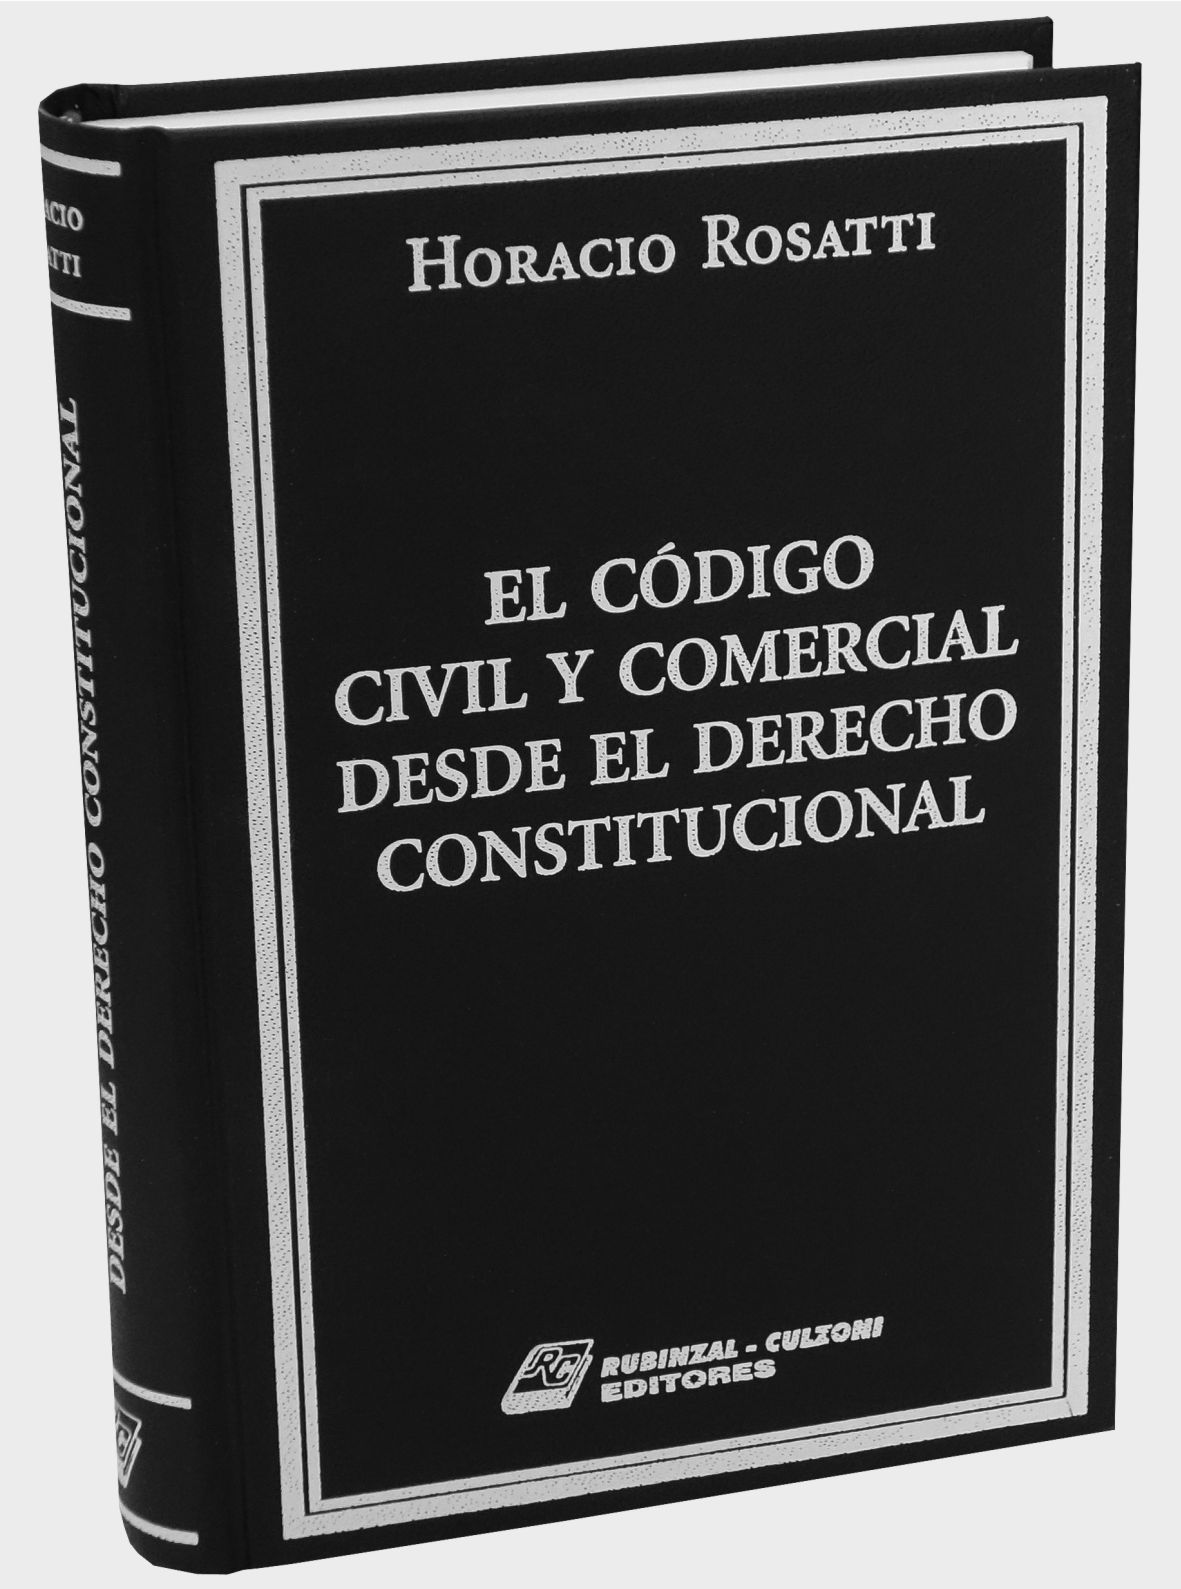 El Código Civil y Comercial desde el Derecho Constitucional